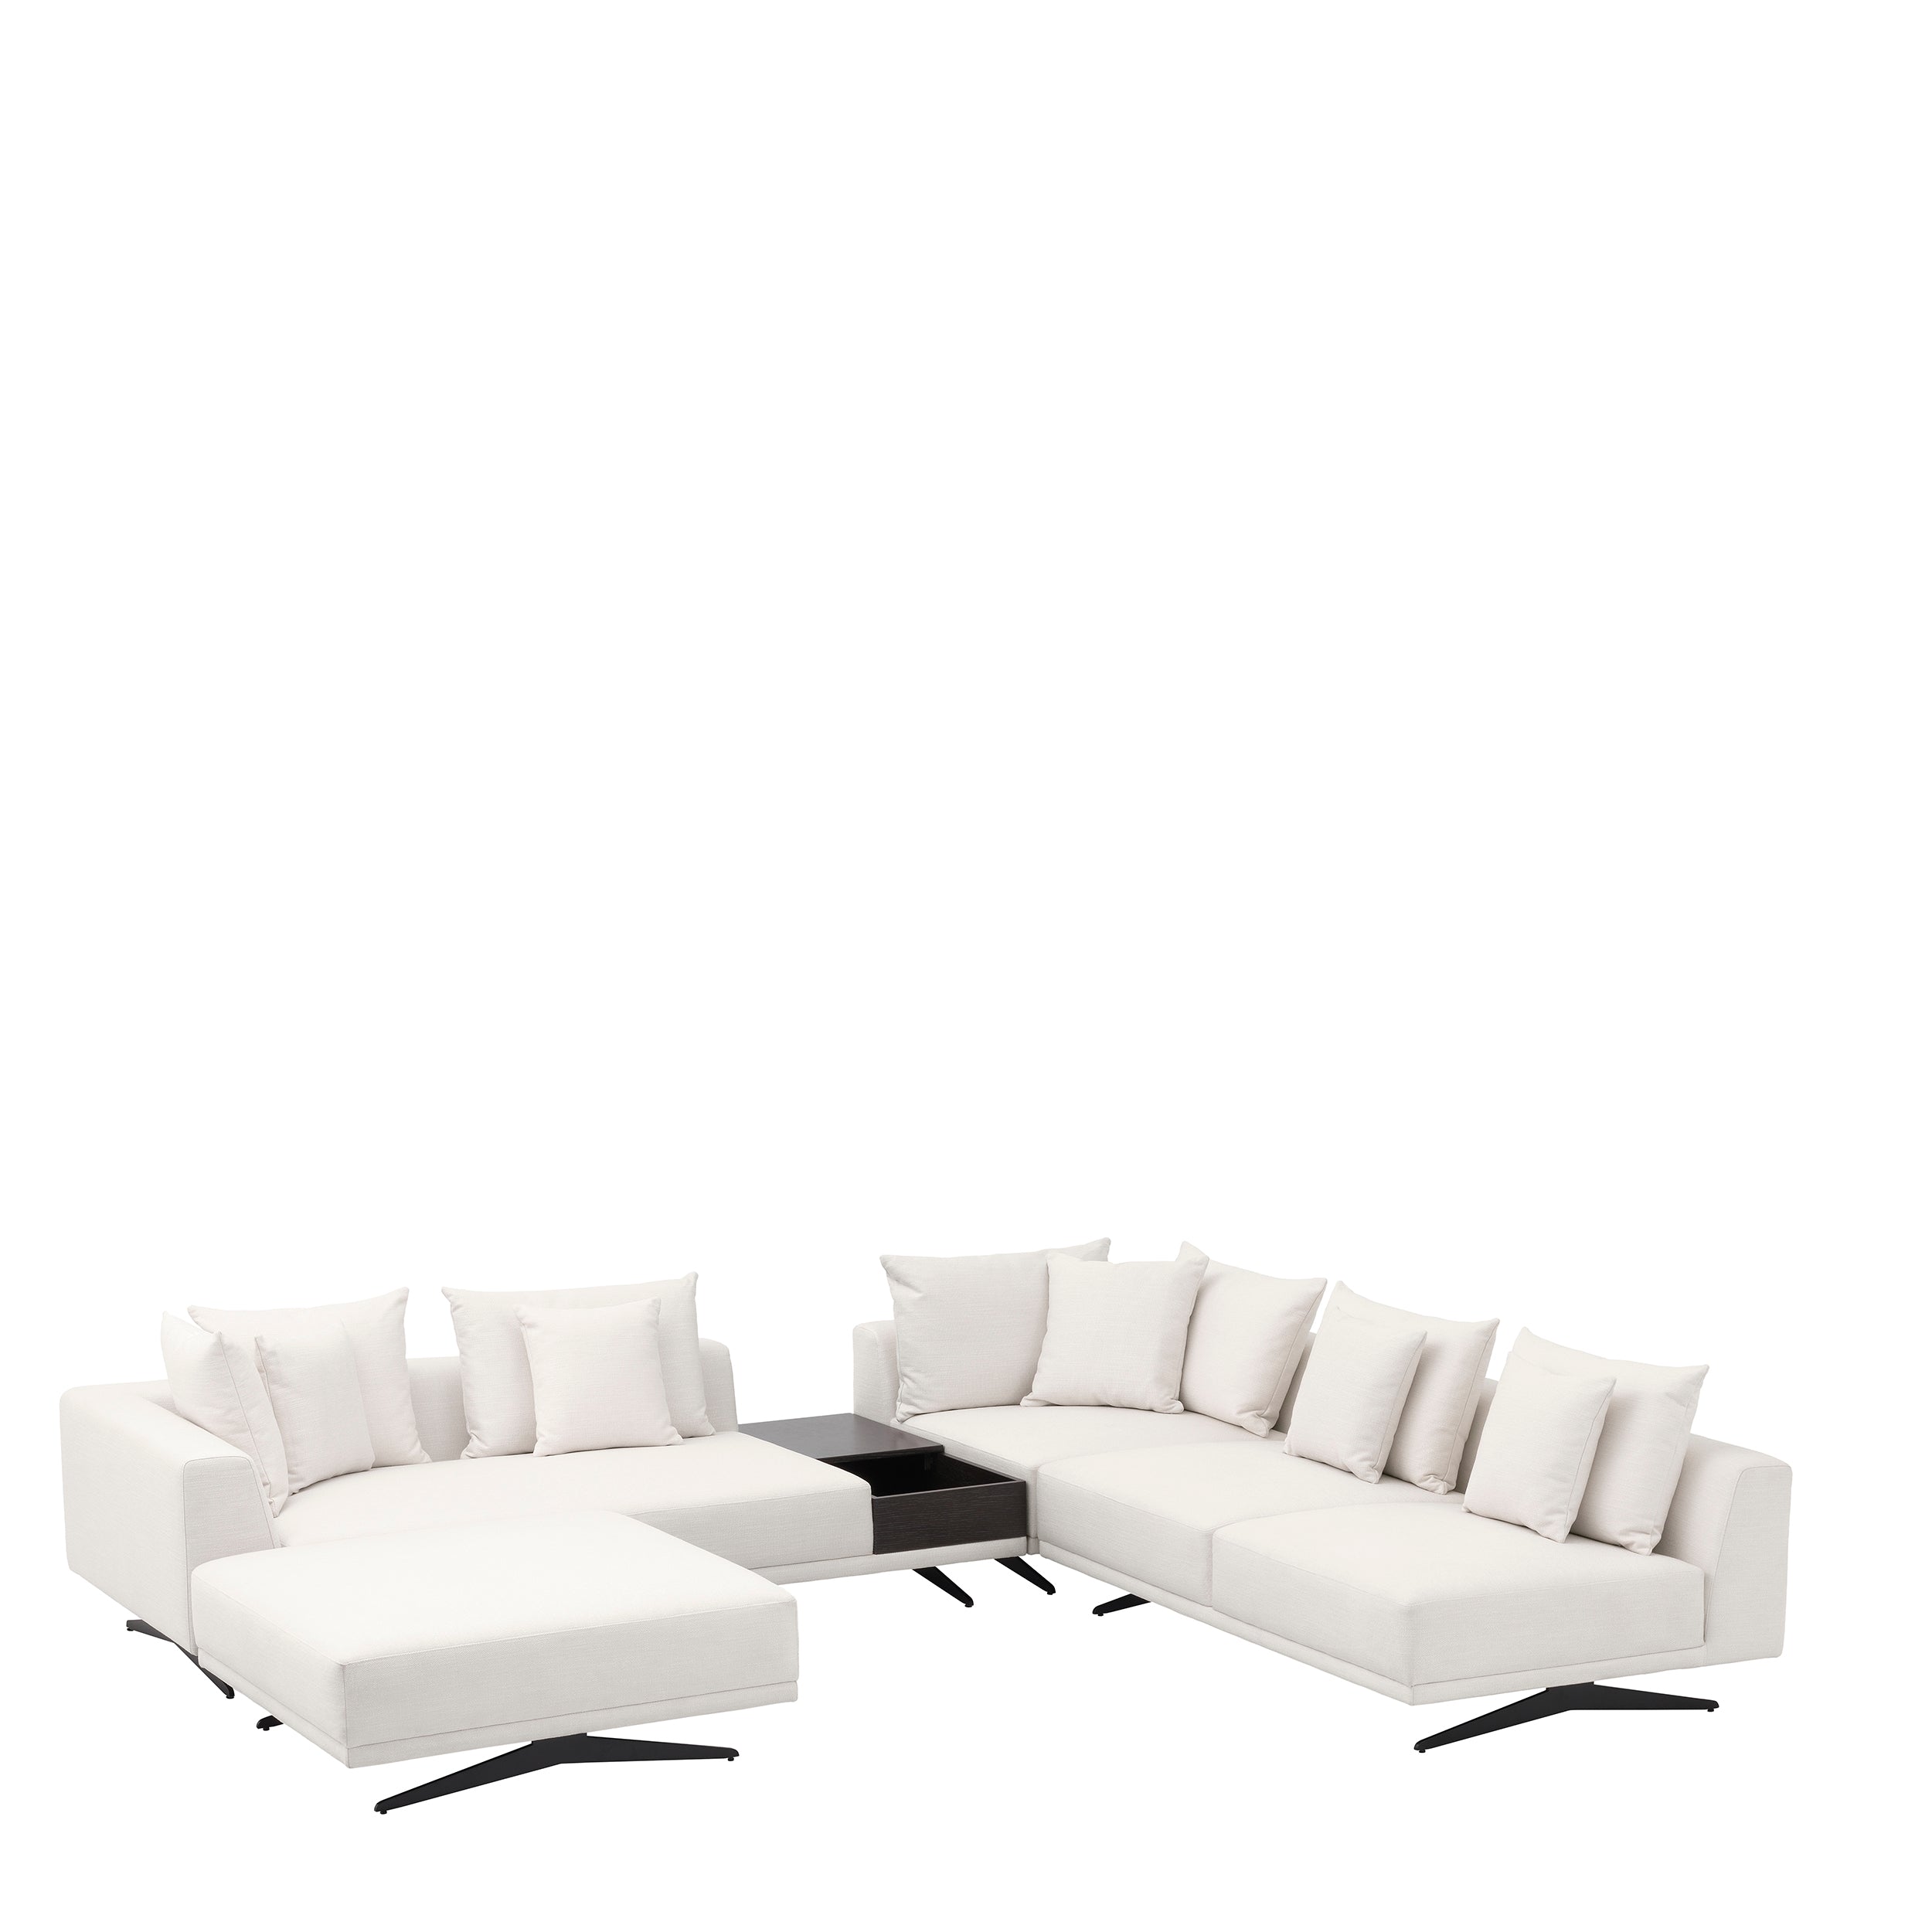 Sofa Endless - Avalon white